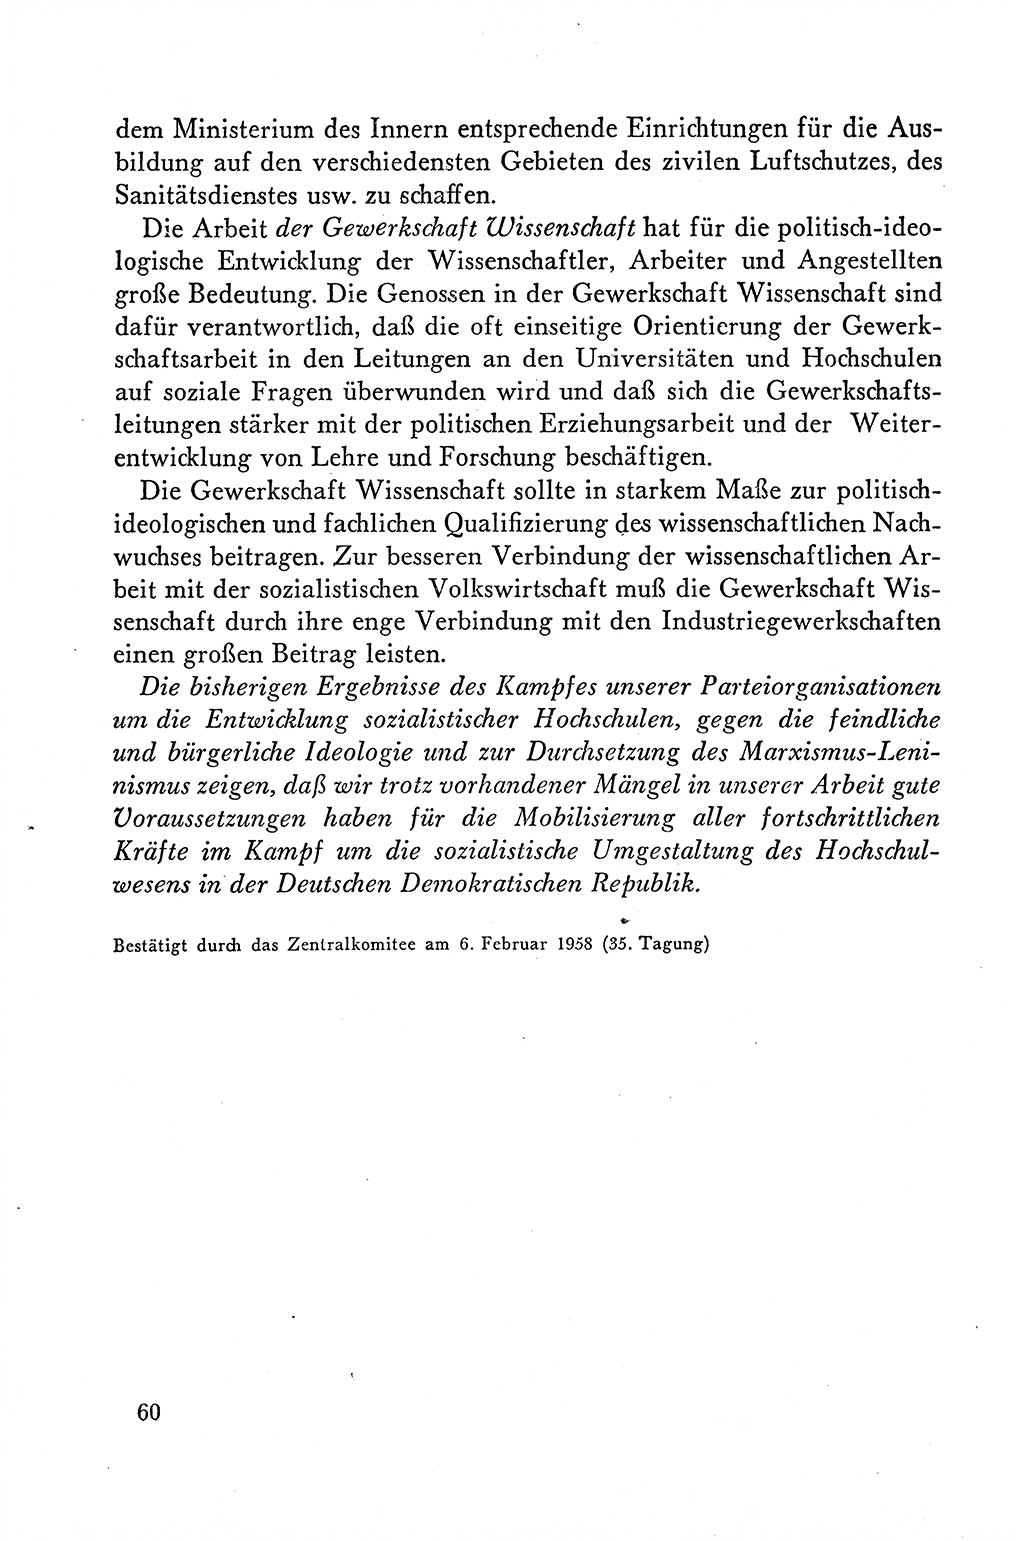 Dokumente der Sozialistischen Einheitspartei Deutschlands (SED) [Deutsche Demokratische Republik (DDR)] 1958-1959, Seite 60 (Dok. SED DDR 1958-1959, S. 60)